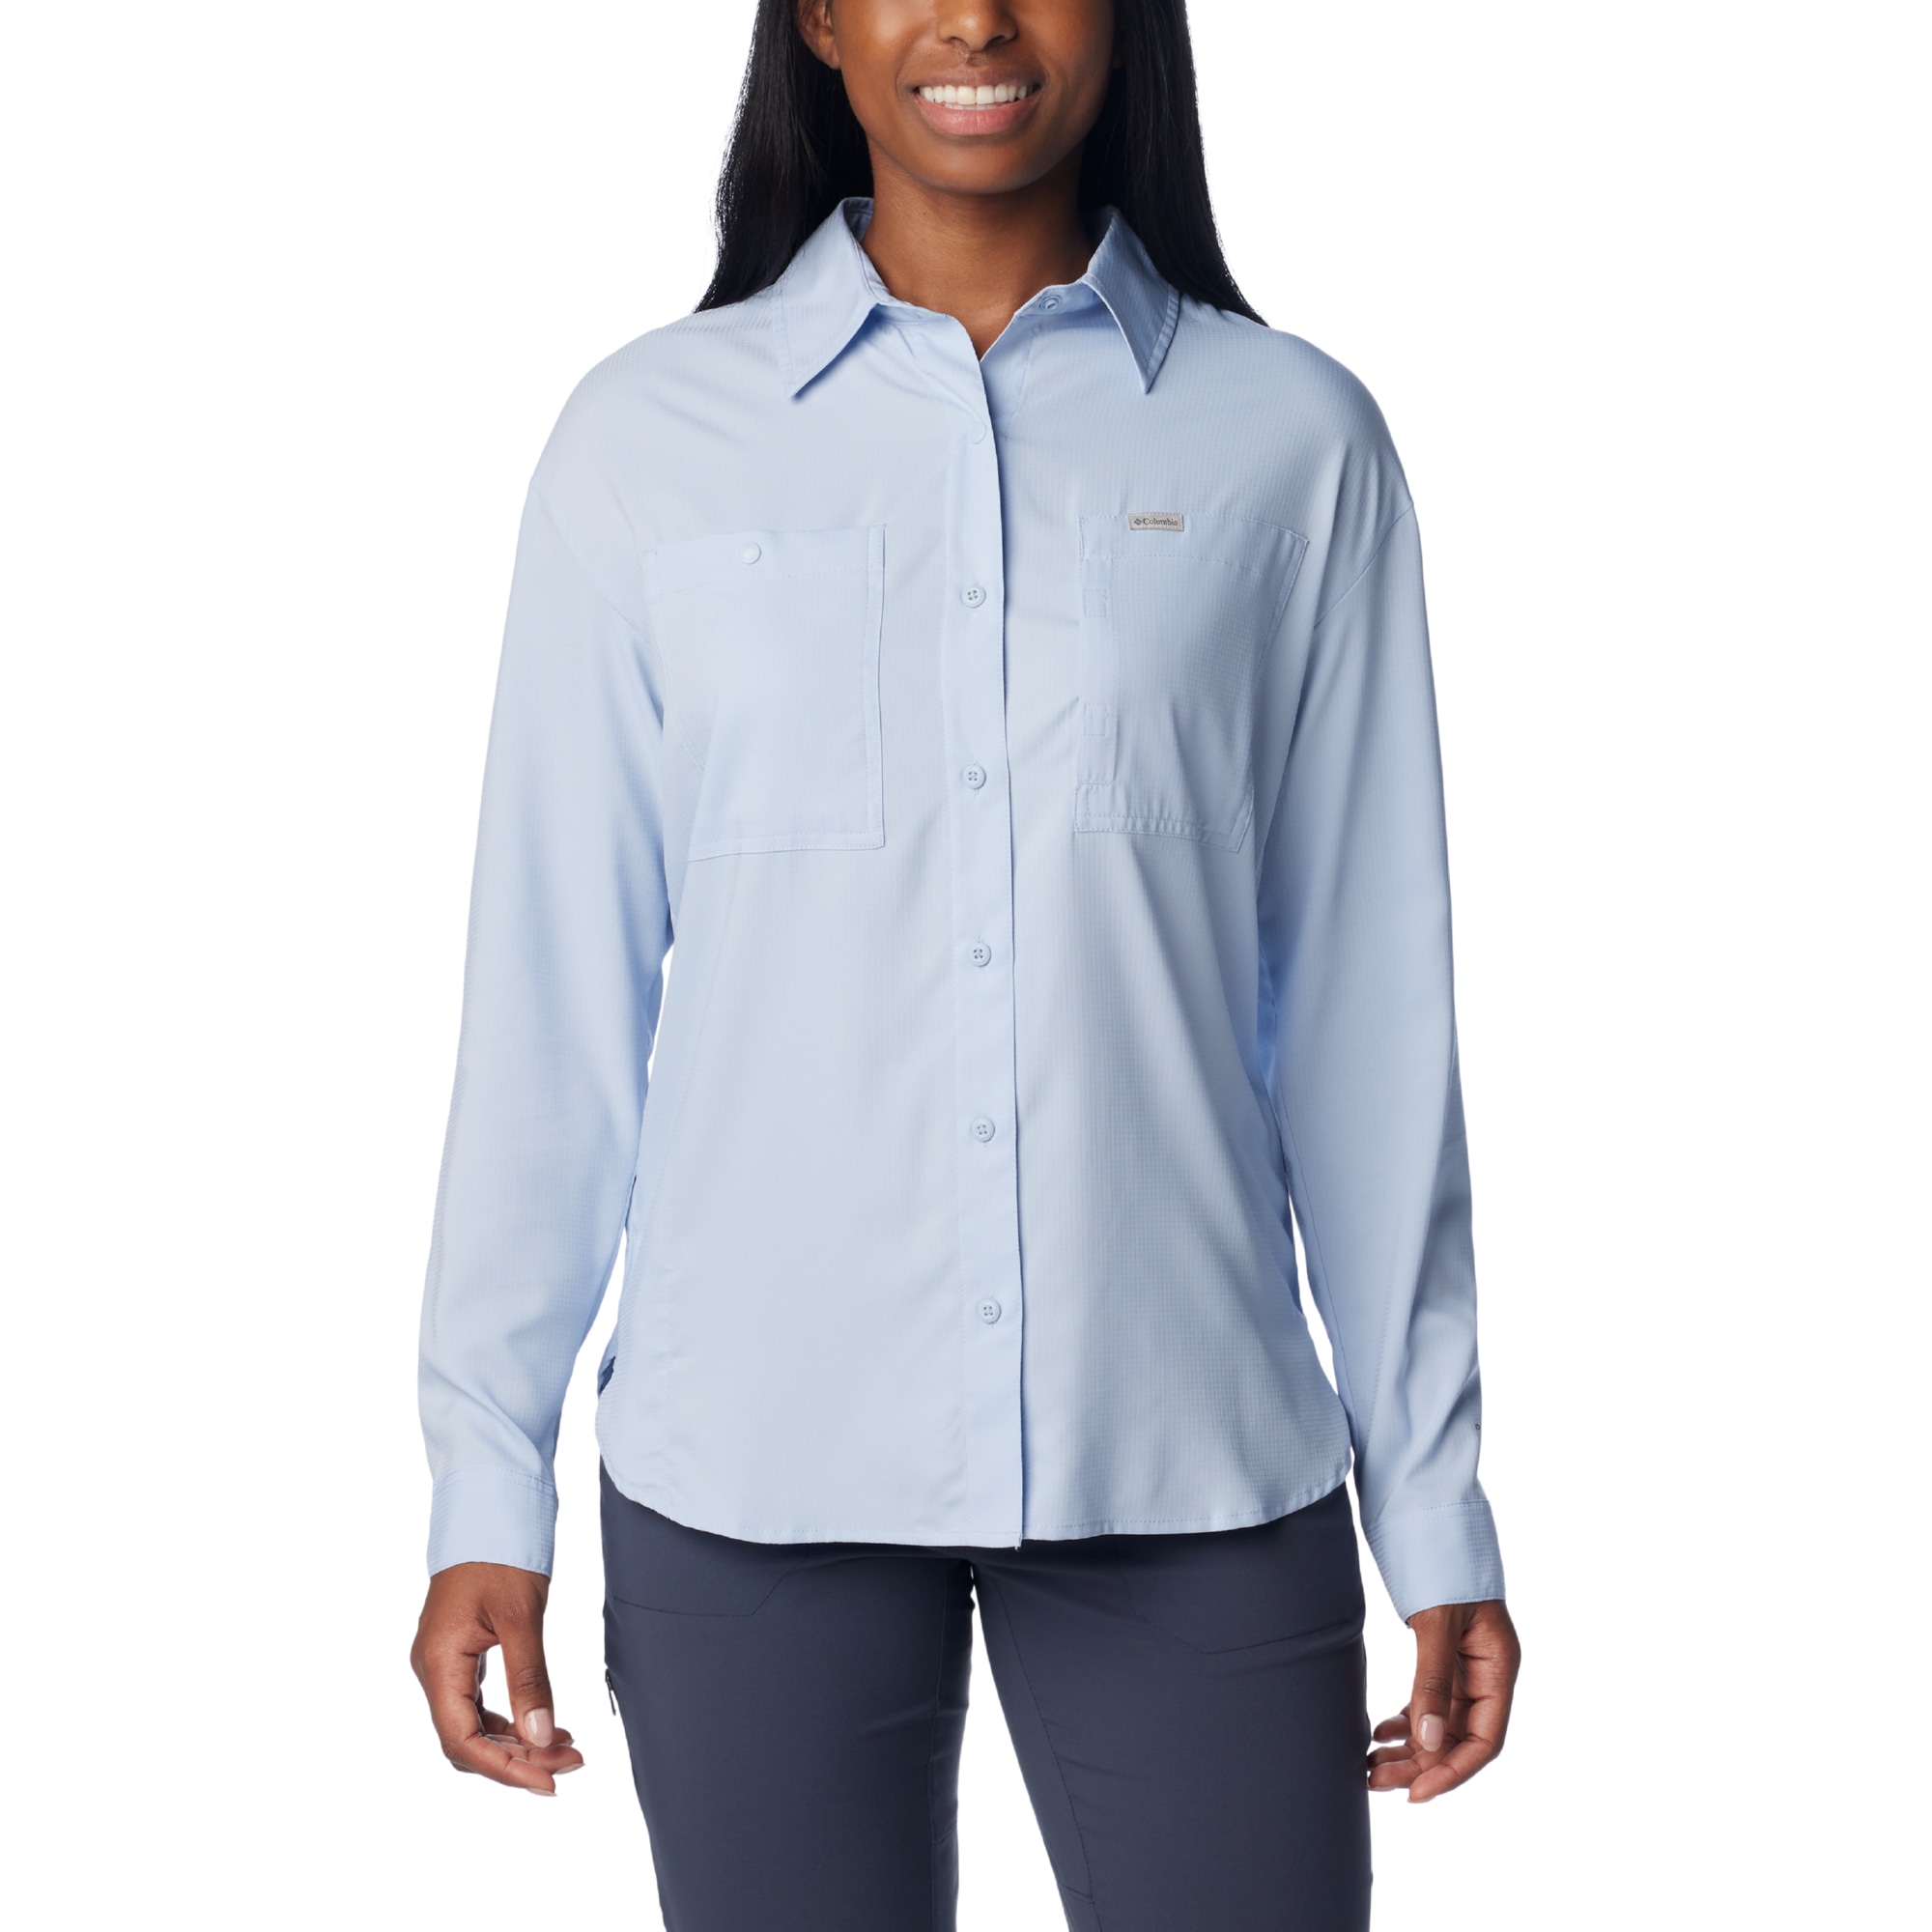 Women's Silver Ridge Utility Long Sleeve Shirt